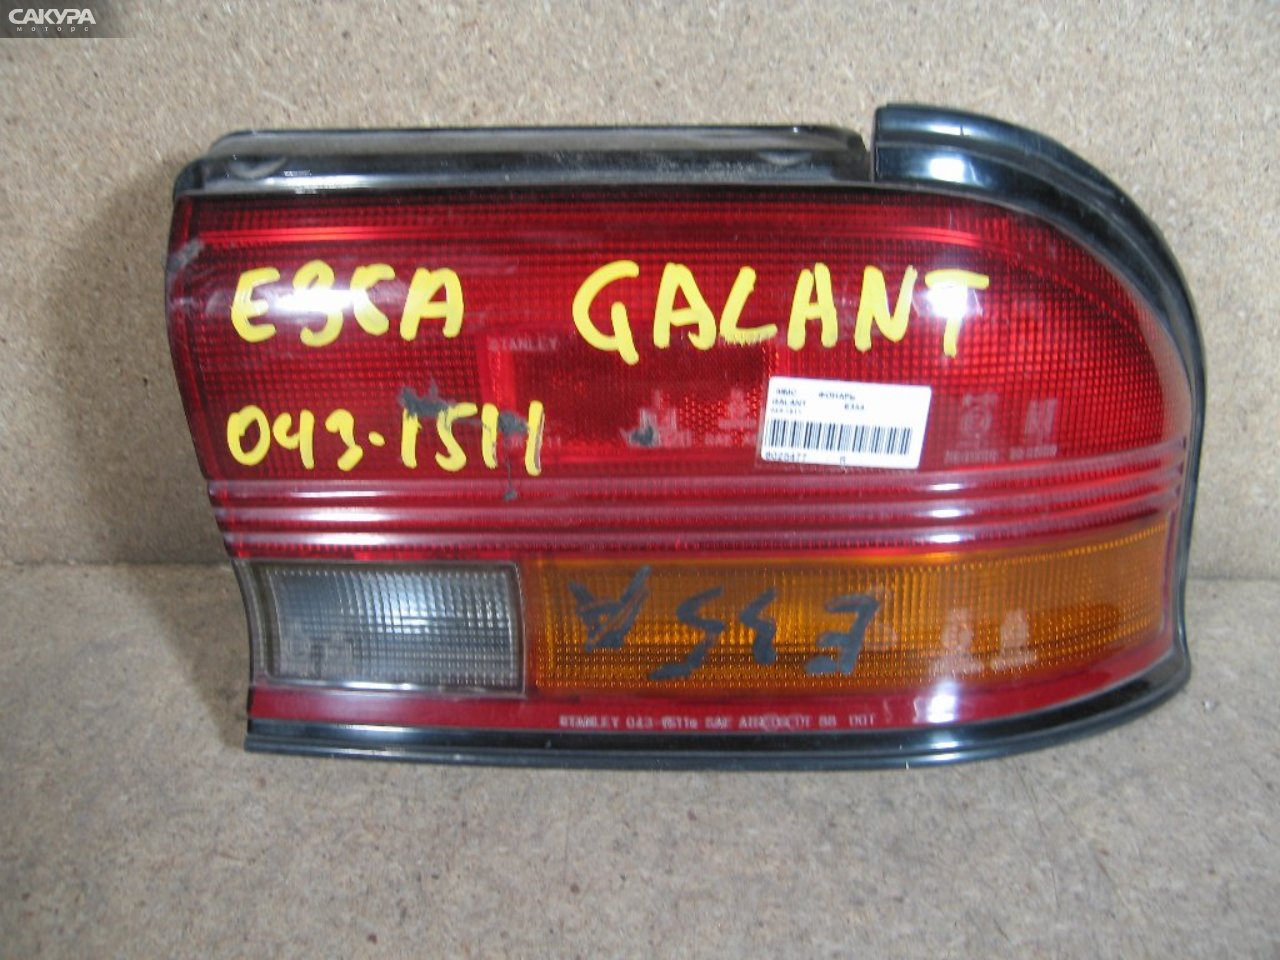 Фонарь стоп-сигнала правый Mitsubishi Galant E35A 043-1511: купить в Сакура Абакан.